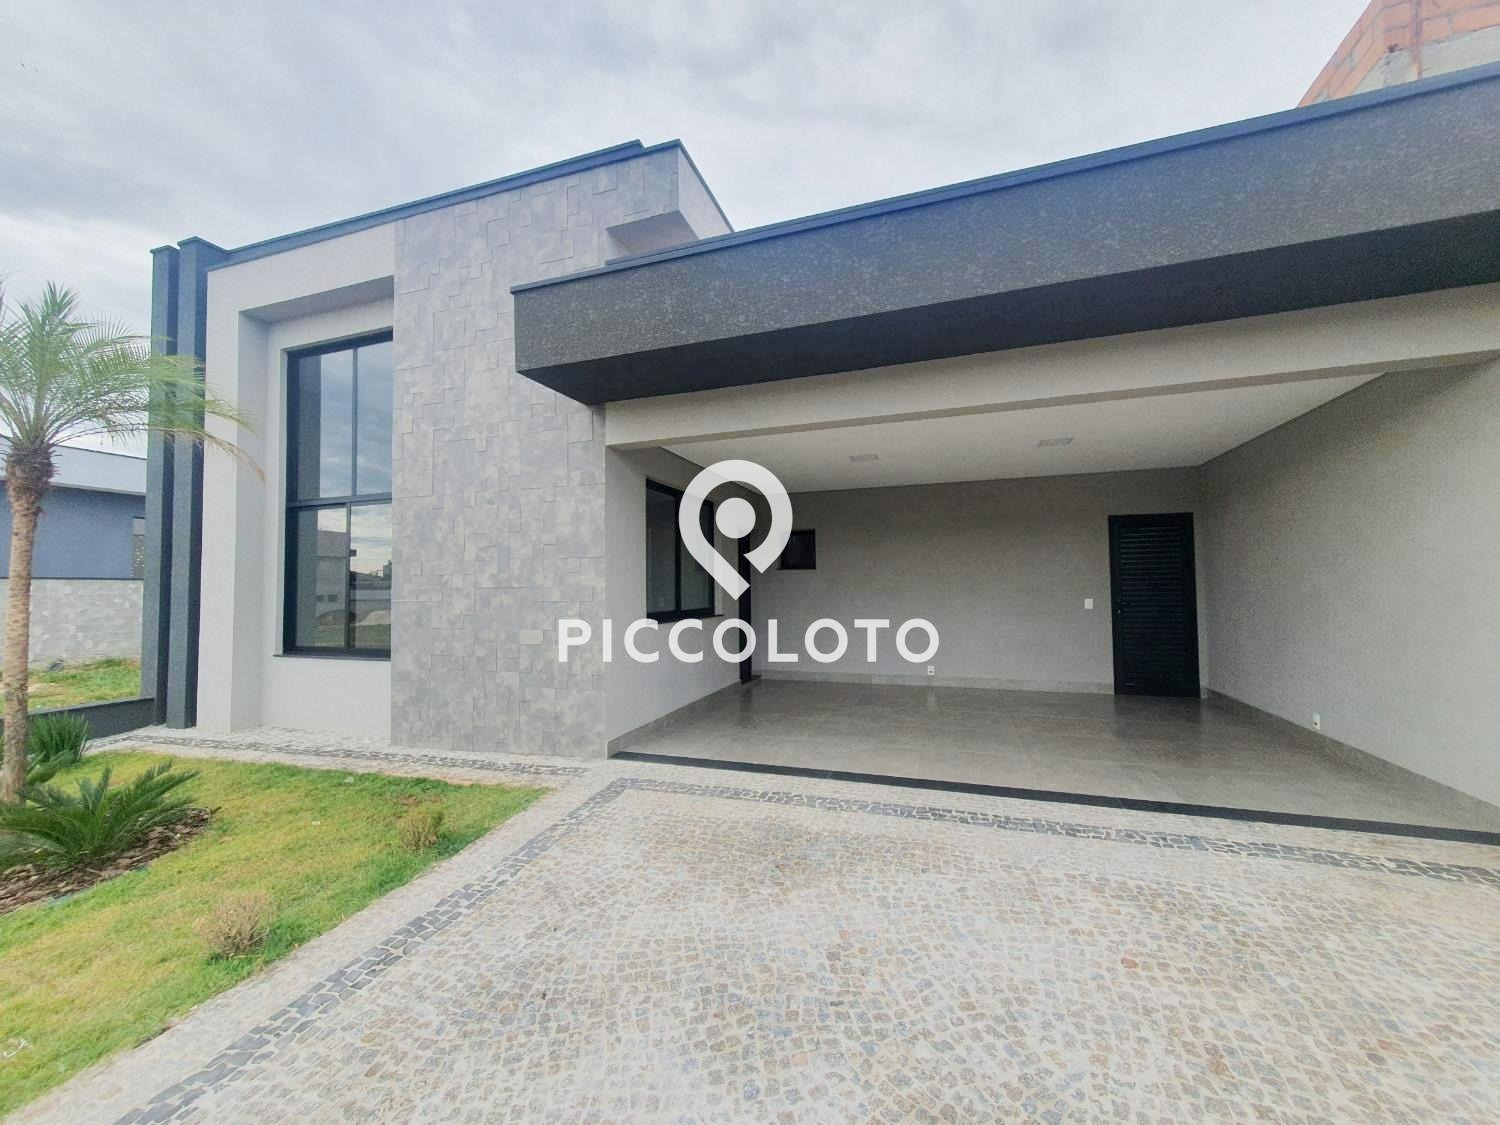 Piccoloto - Casa à venda no Parque Brasil 500 em Paulínia